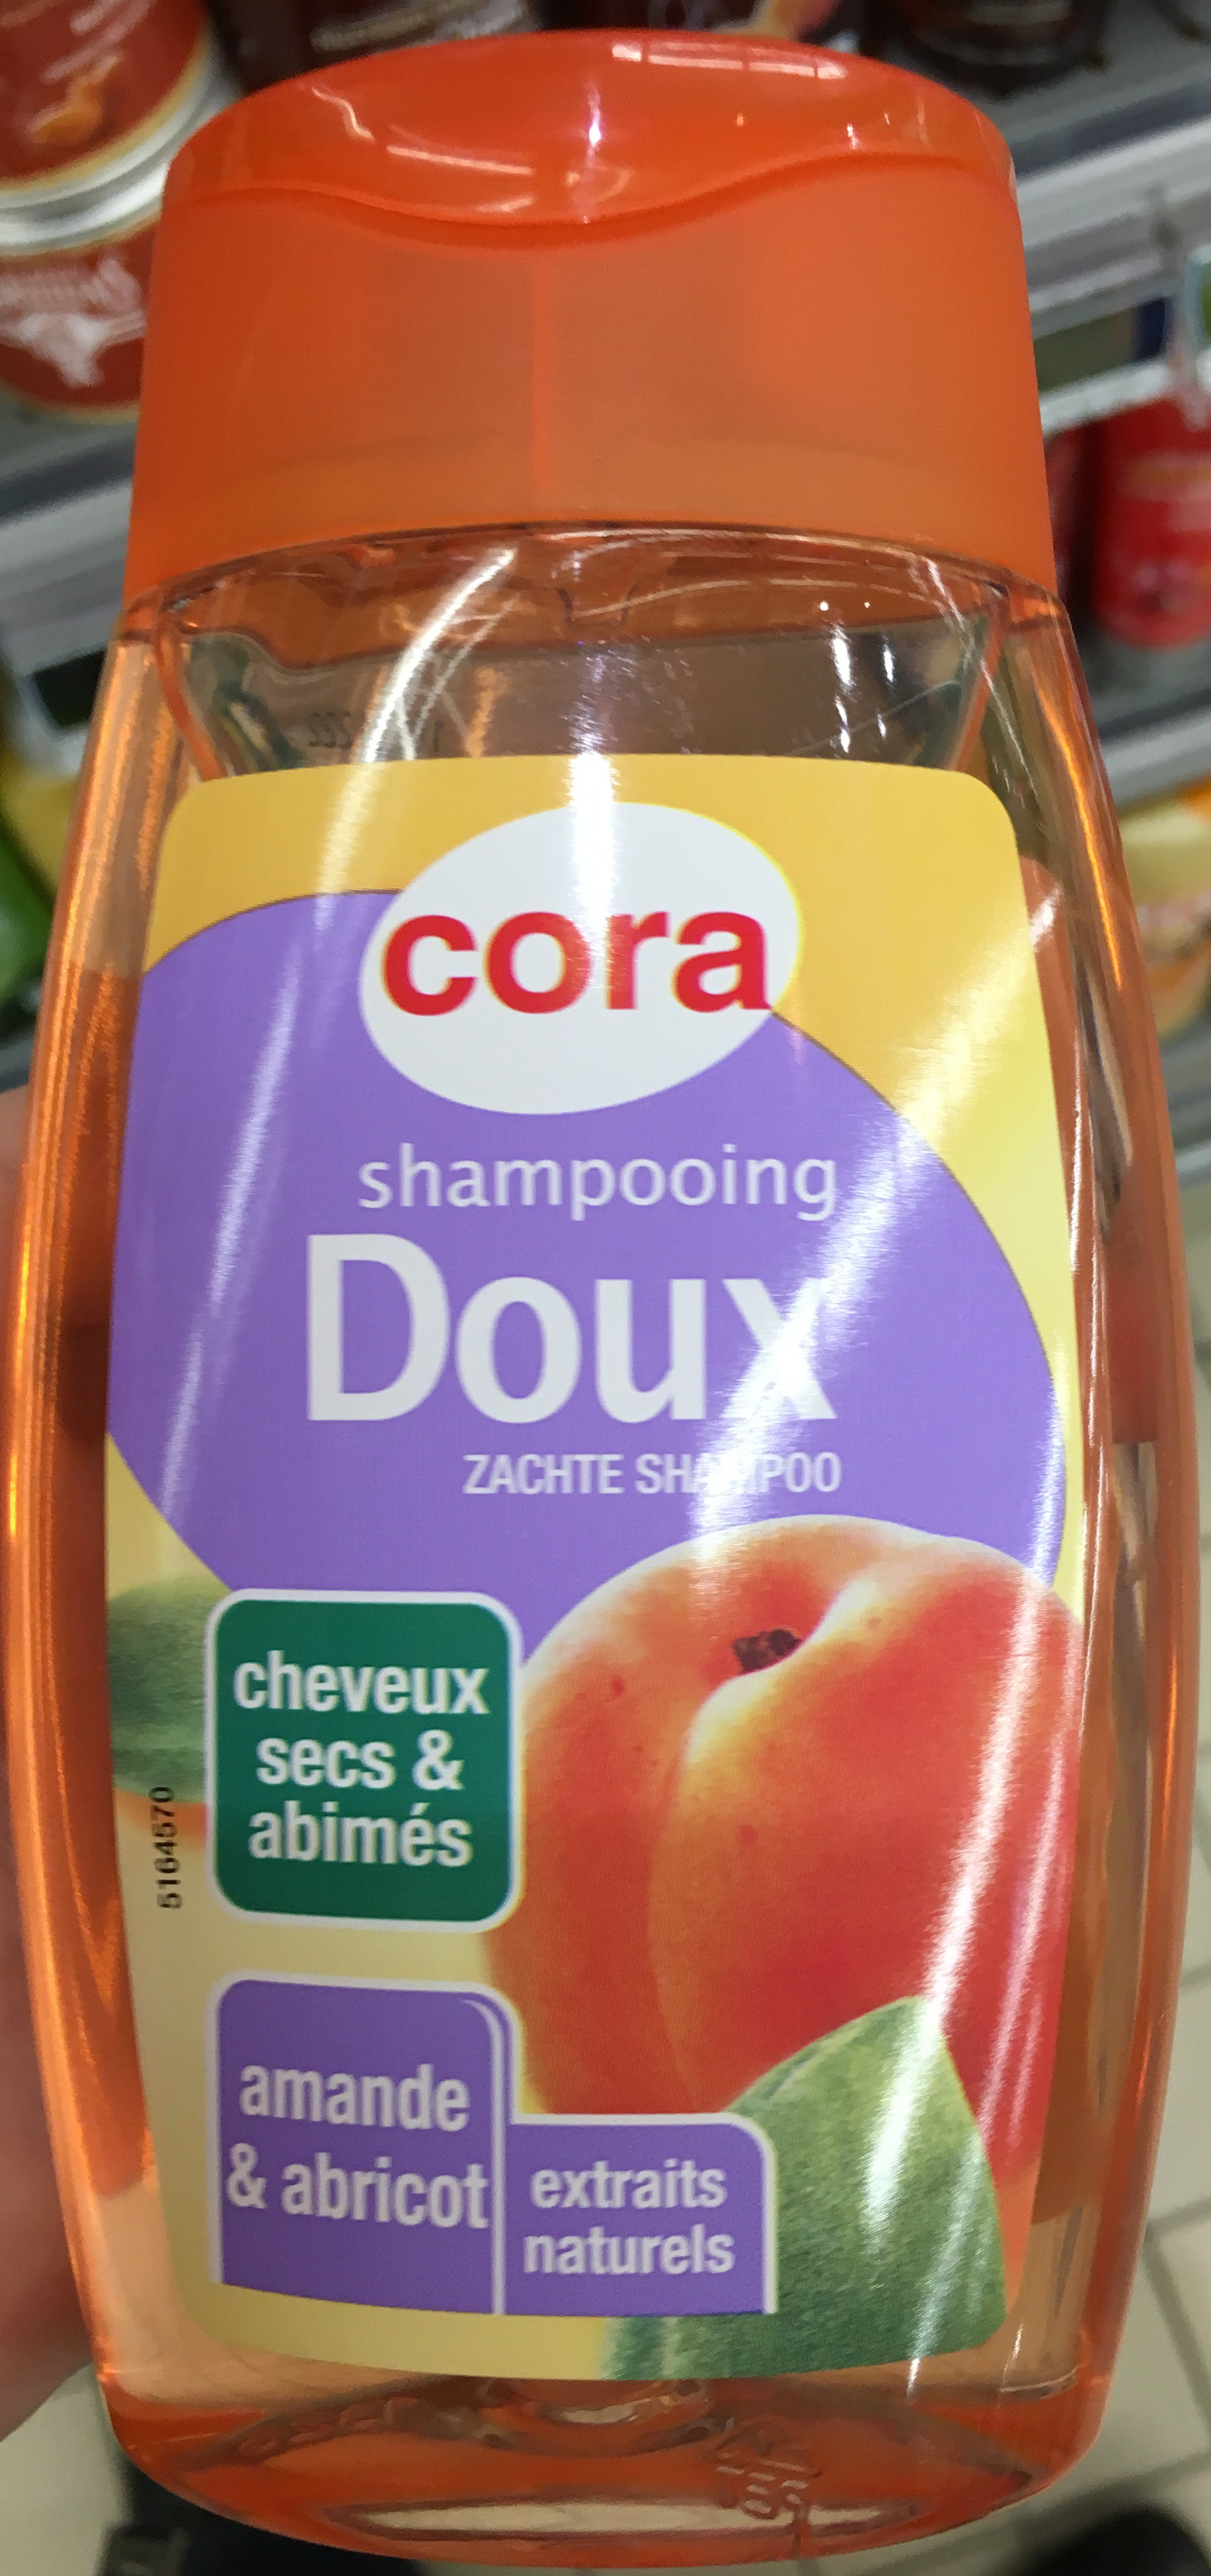 Shampooing Doux Cheveux secs & abimés Amande & Abricot - Tuote - fr